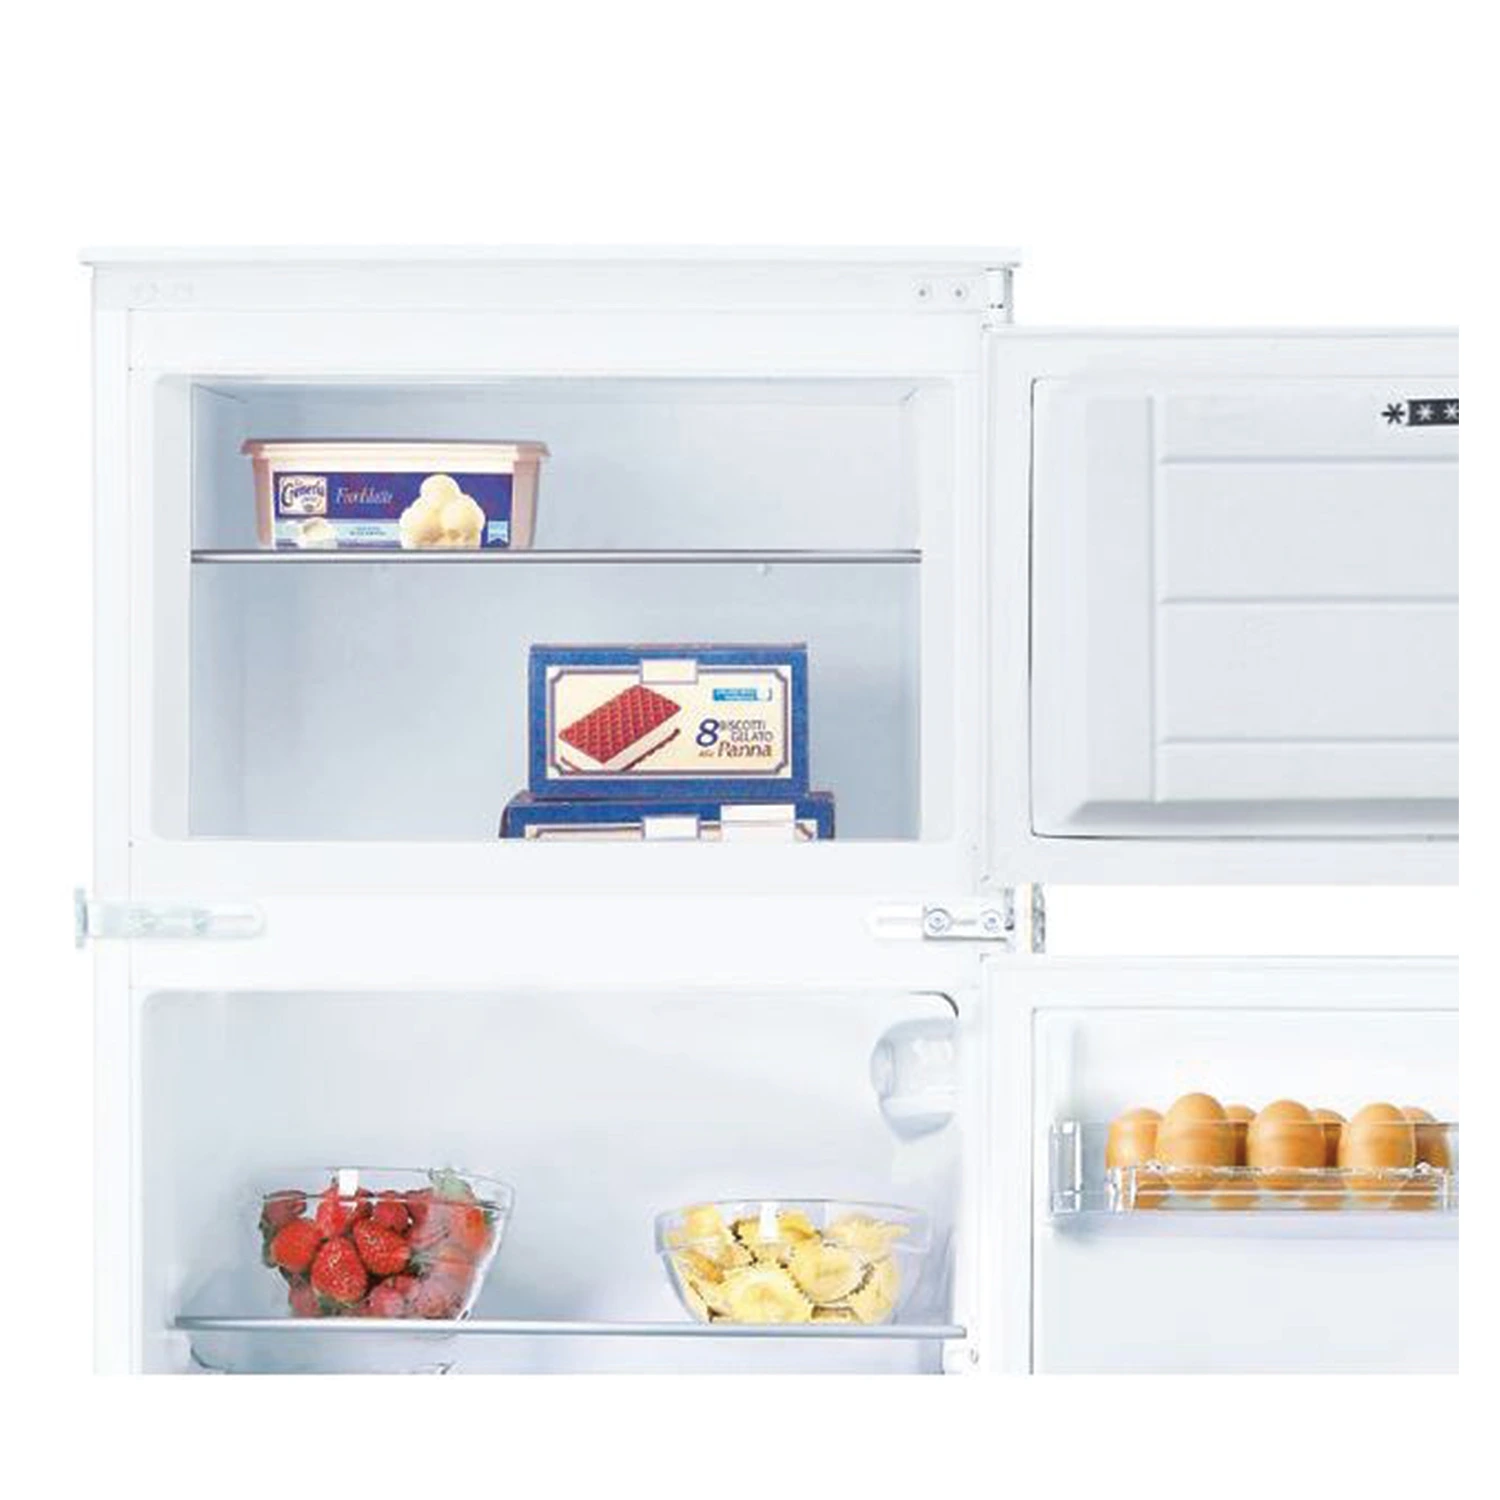 Ugradbeni frižider sa zamrzivačem sa ladicom za voće i povrće u donjem dijelu.